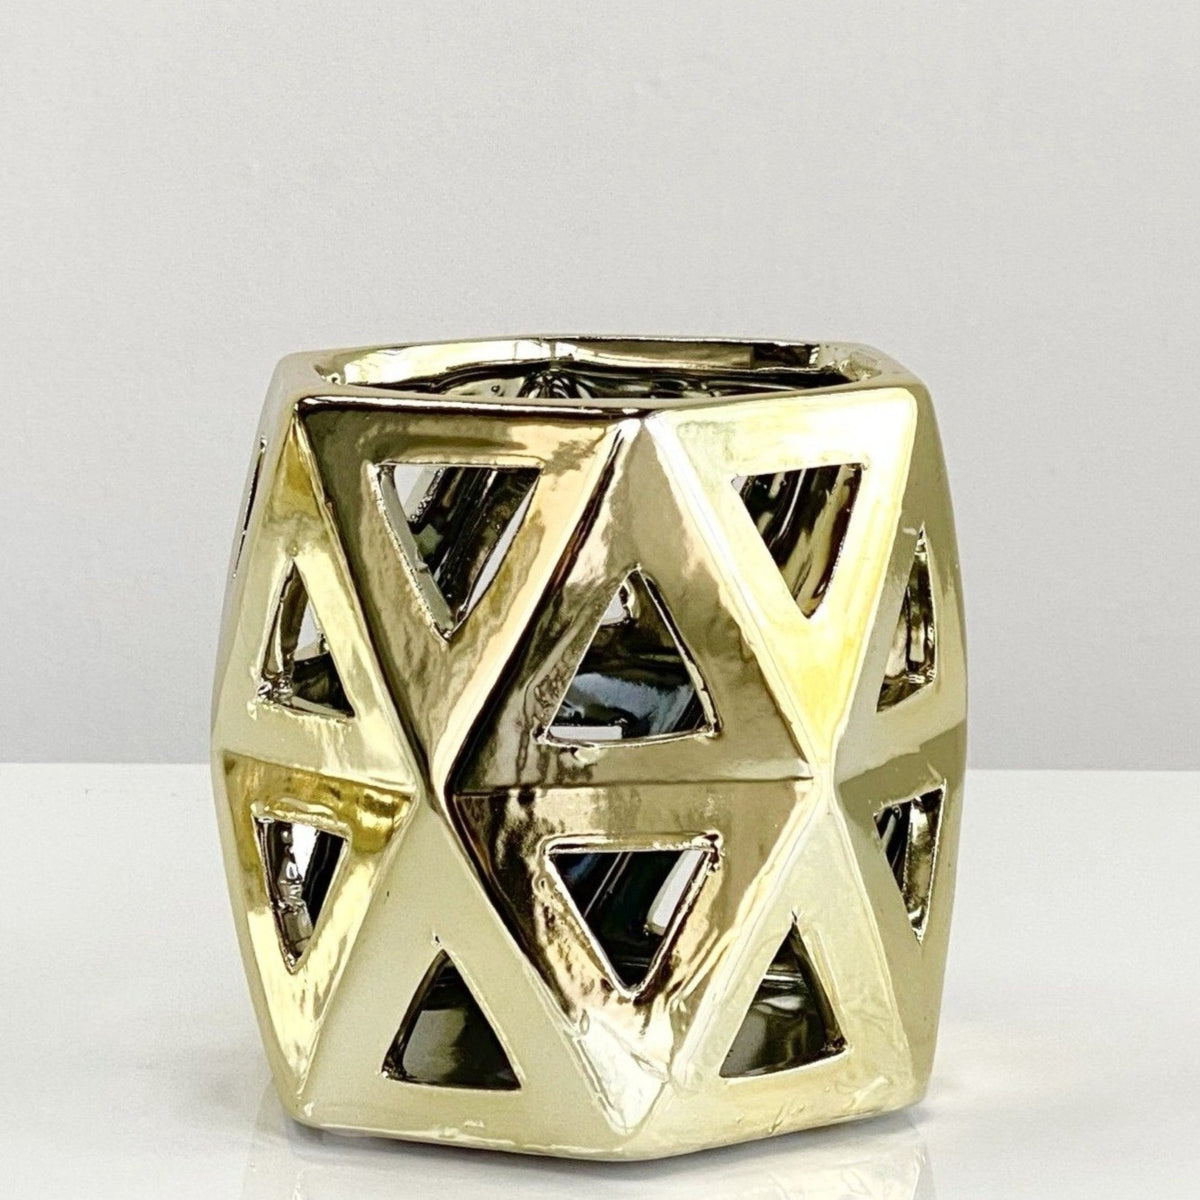 Geometric Design Ceramic Gold Vase